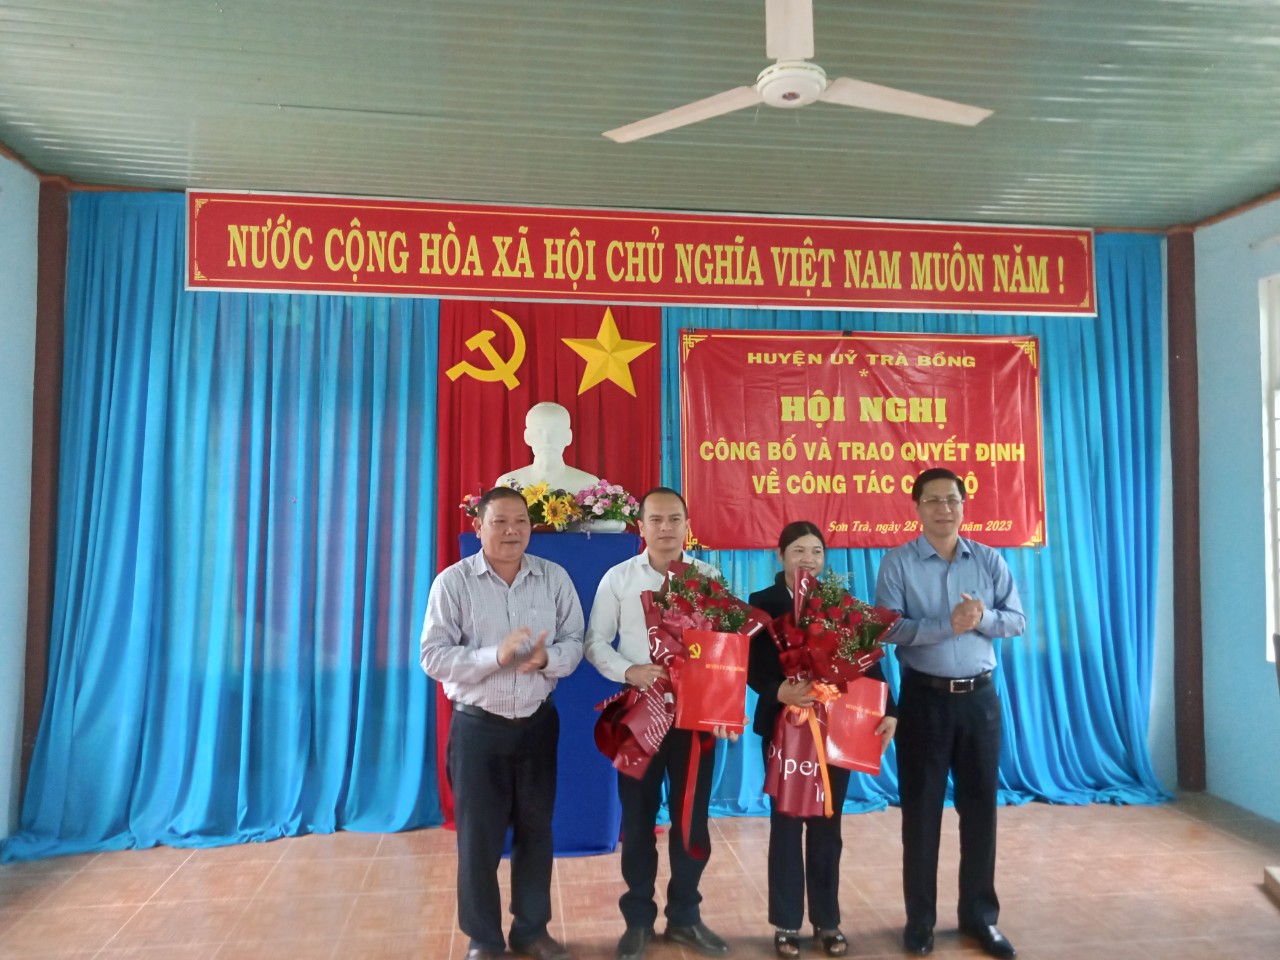 Huyện uỷ Trà Bồng công bố quyết định điều động, luân chuyển cán bộ tại các xã Sơn Trà và xã Trà Phong